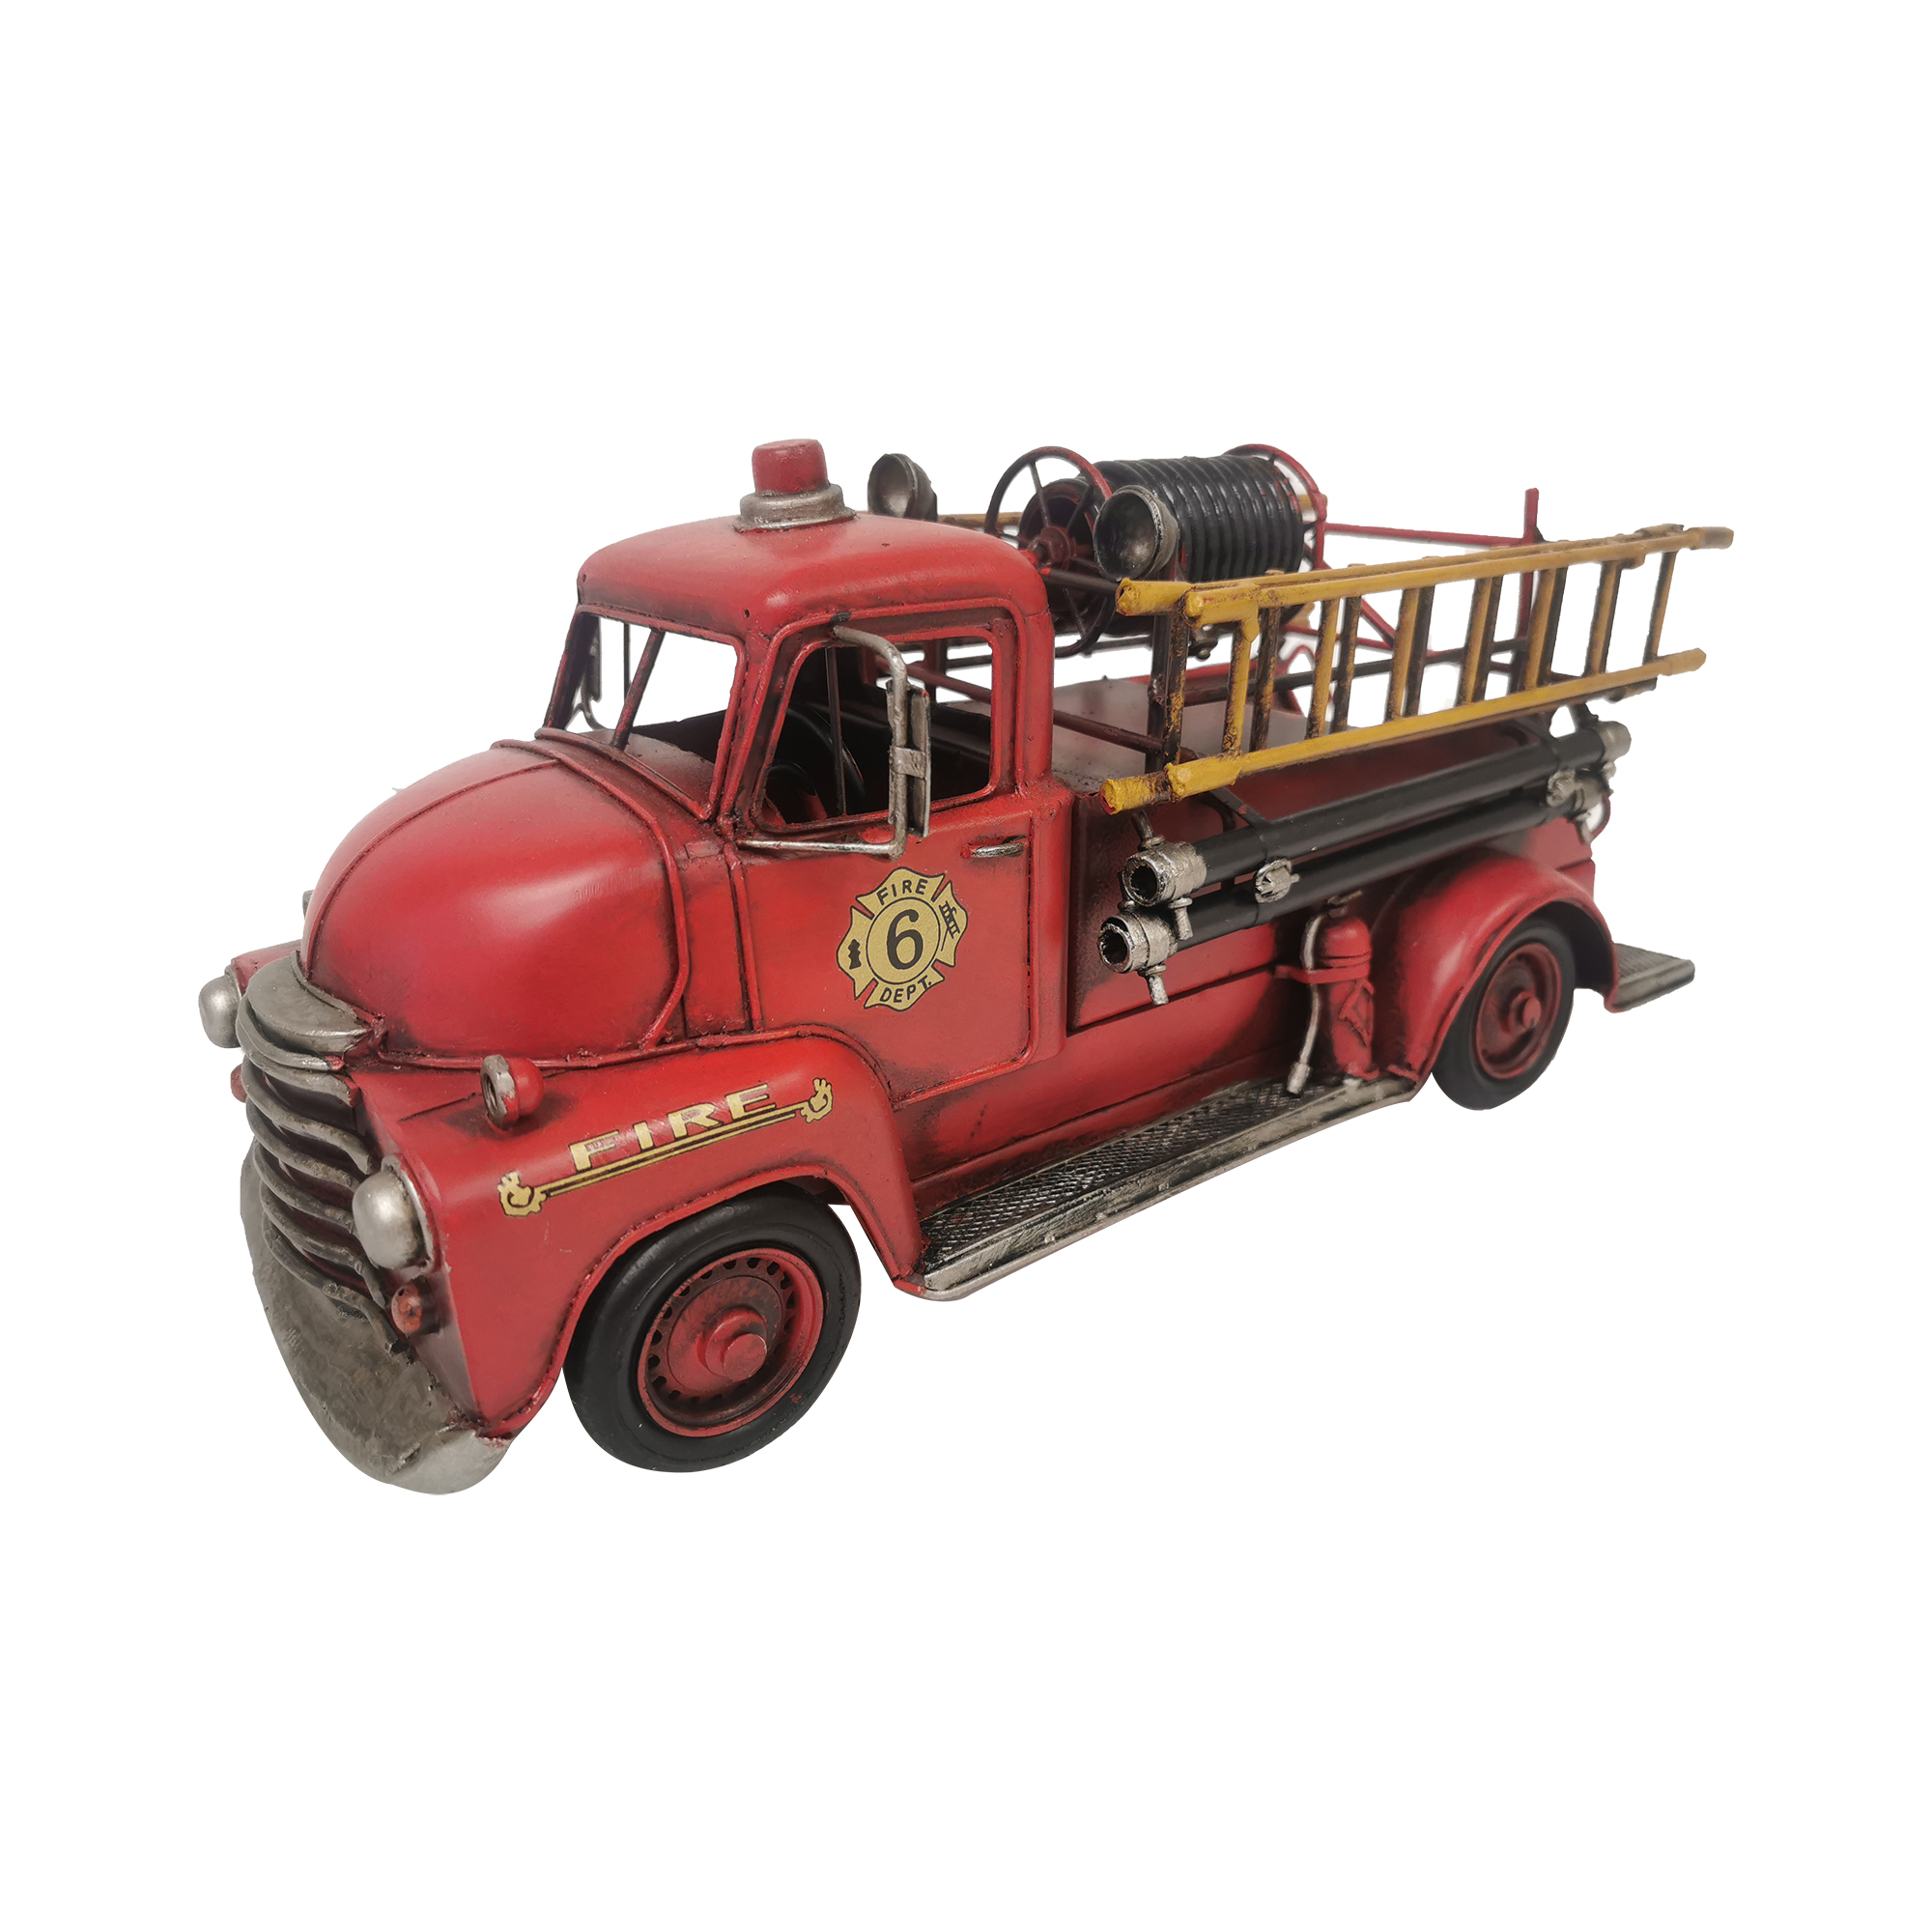 Fire truck Metal Model